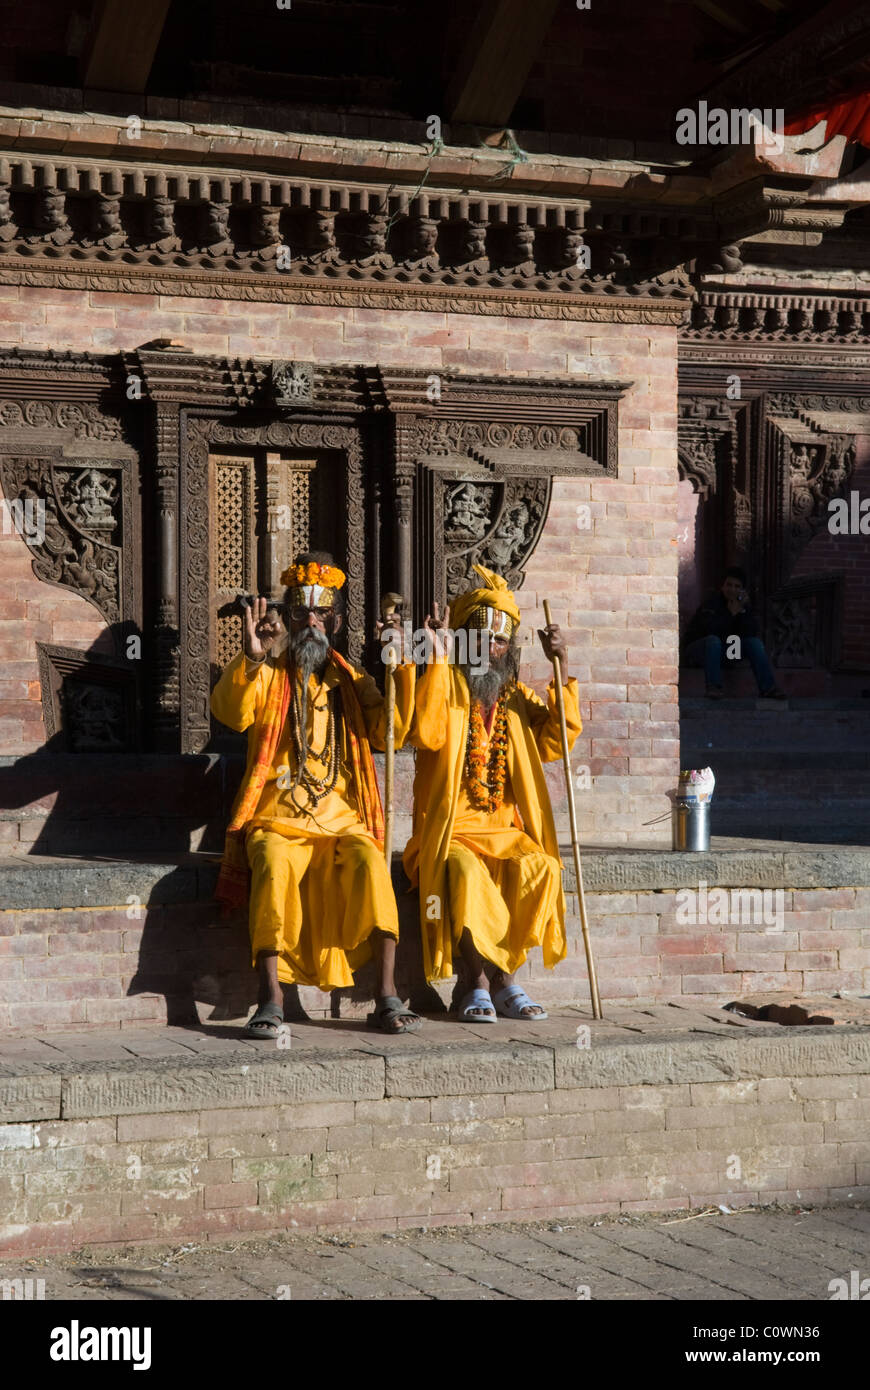 Sadhu saints hommes à Durbar Square, Katmandou, Népal. Banque D'Images